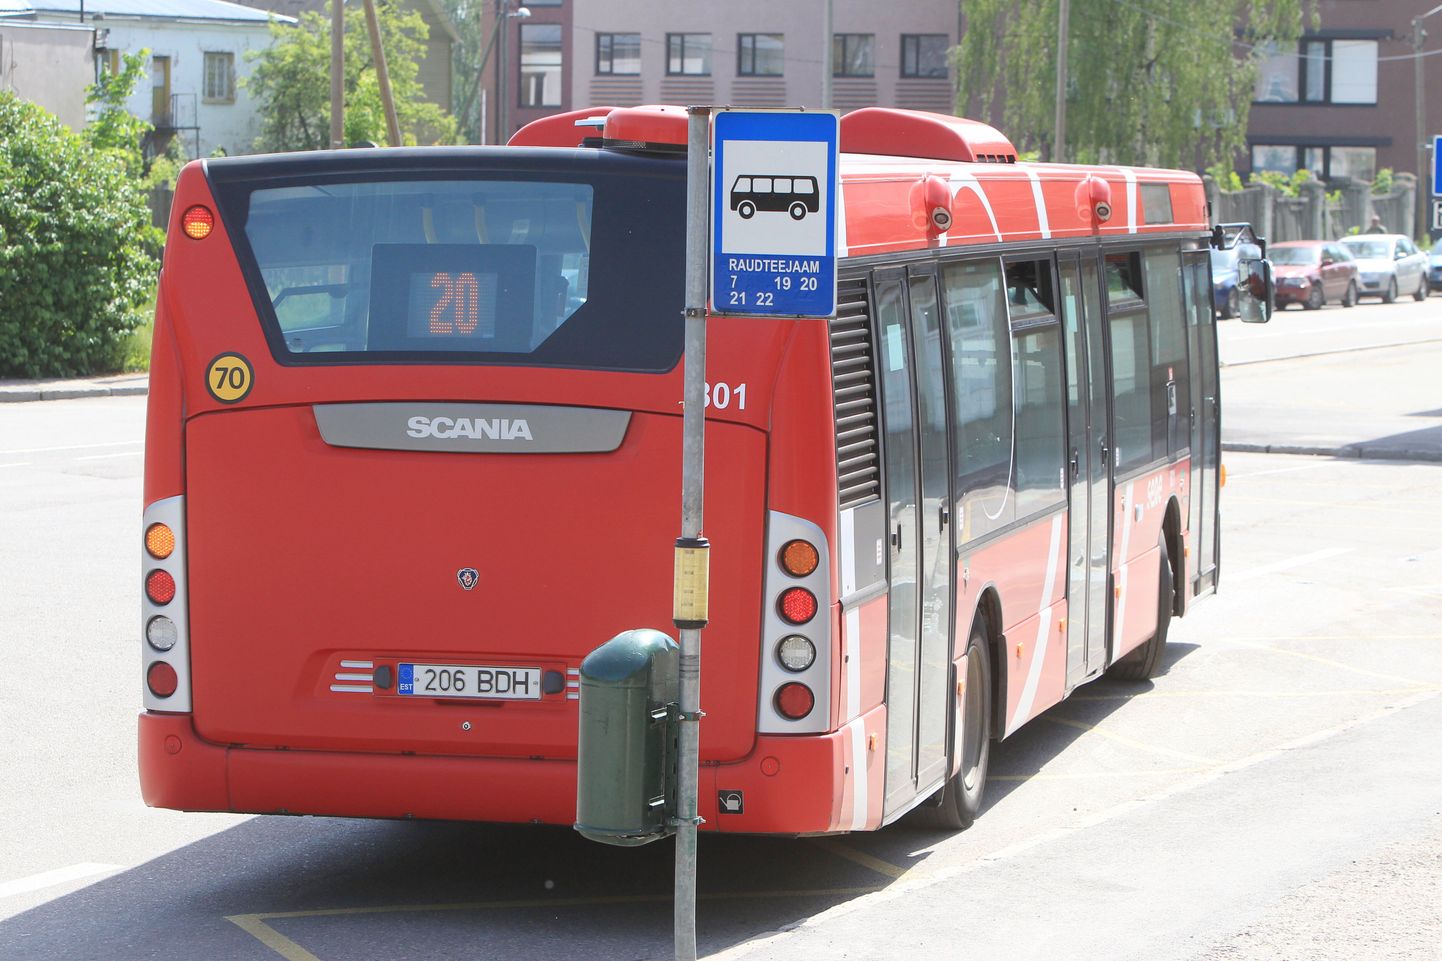 Praegu teenindavad Tartu linnaliine Sebe punased bussid.